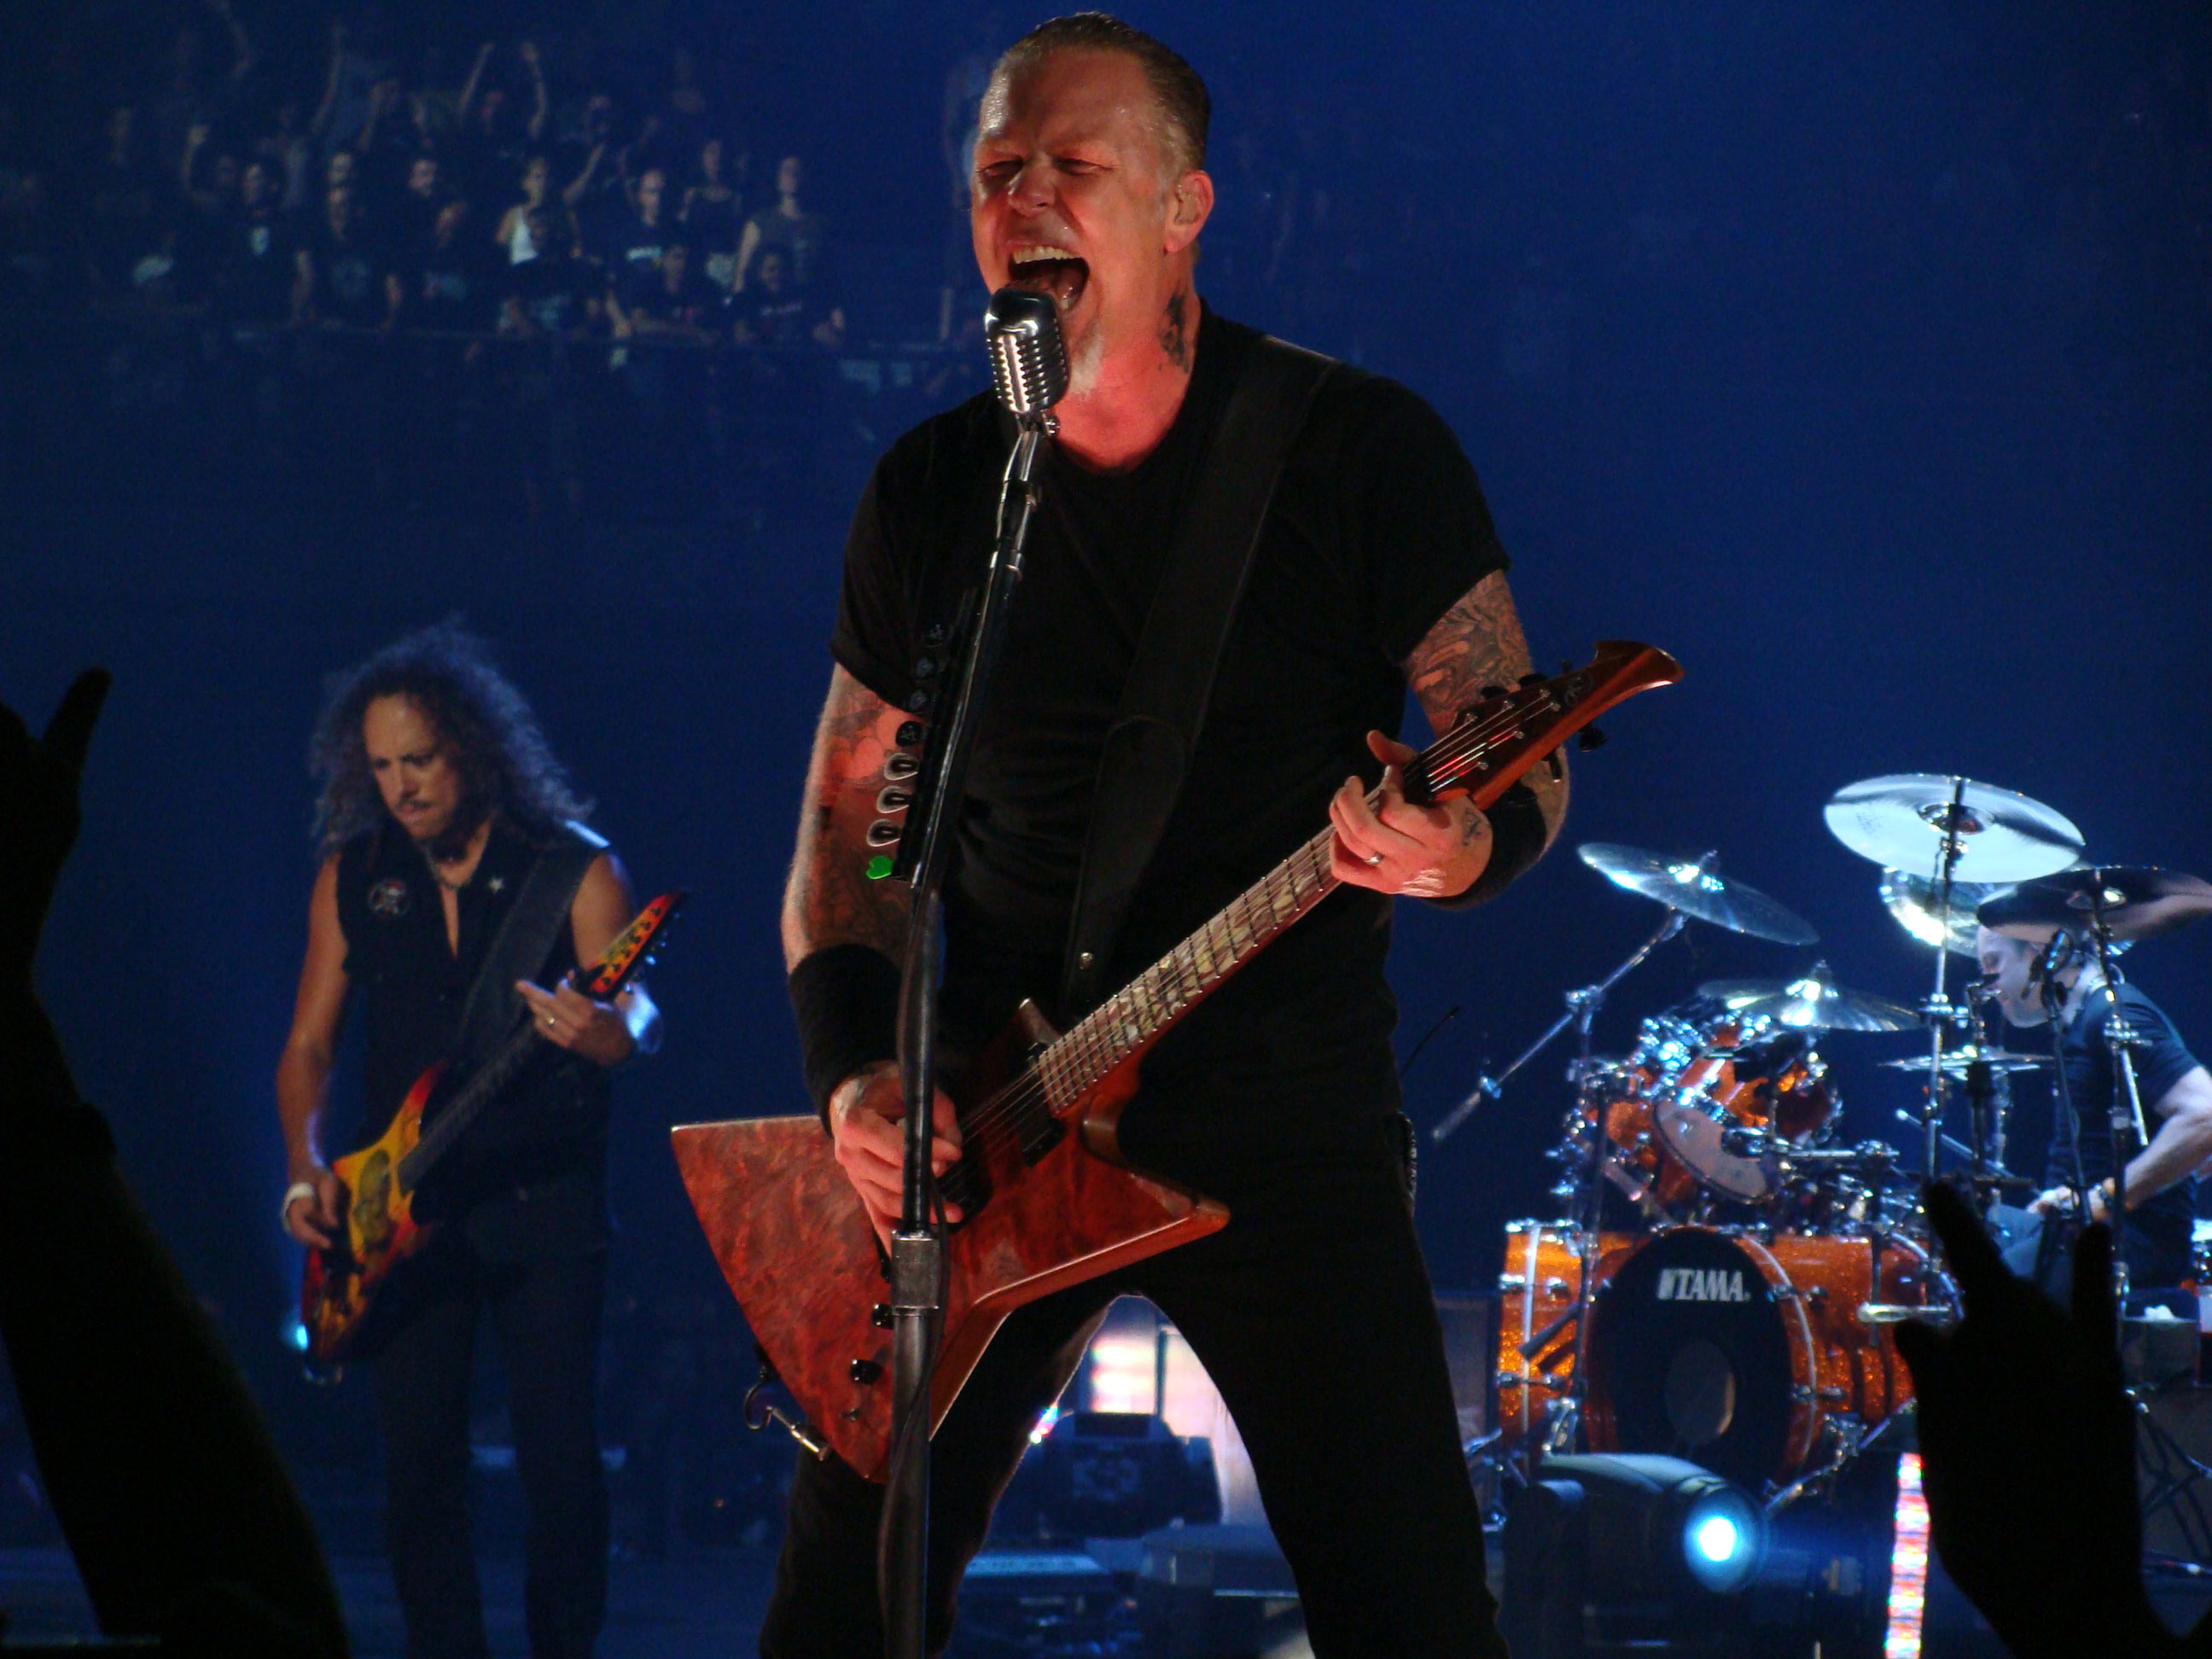 James Hetfield Madrid 2009 - Shure Super 55 Metallica , HD Wallpaper & Backgrounds